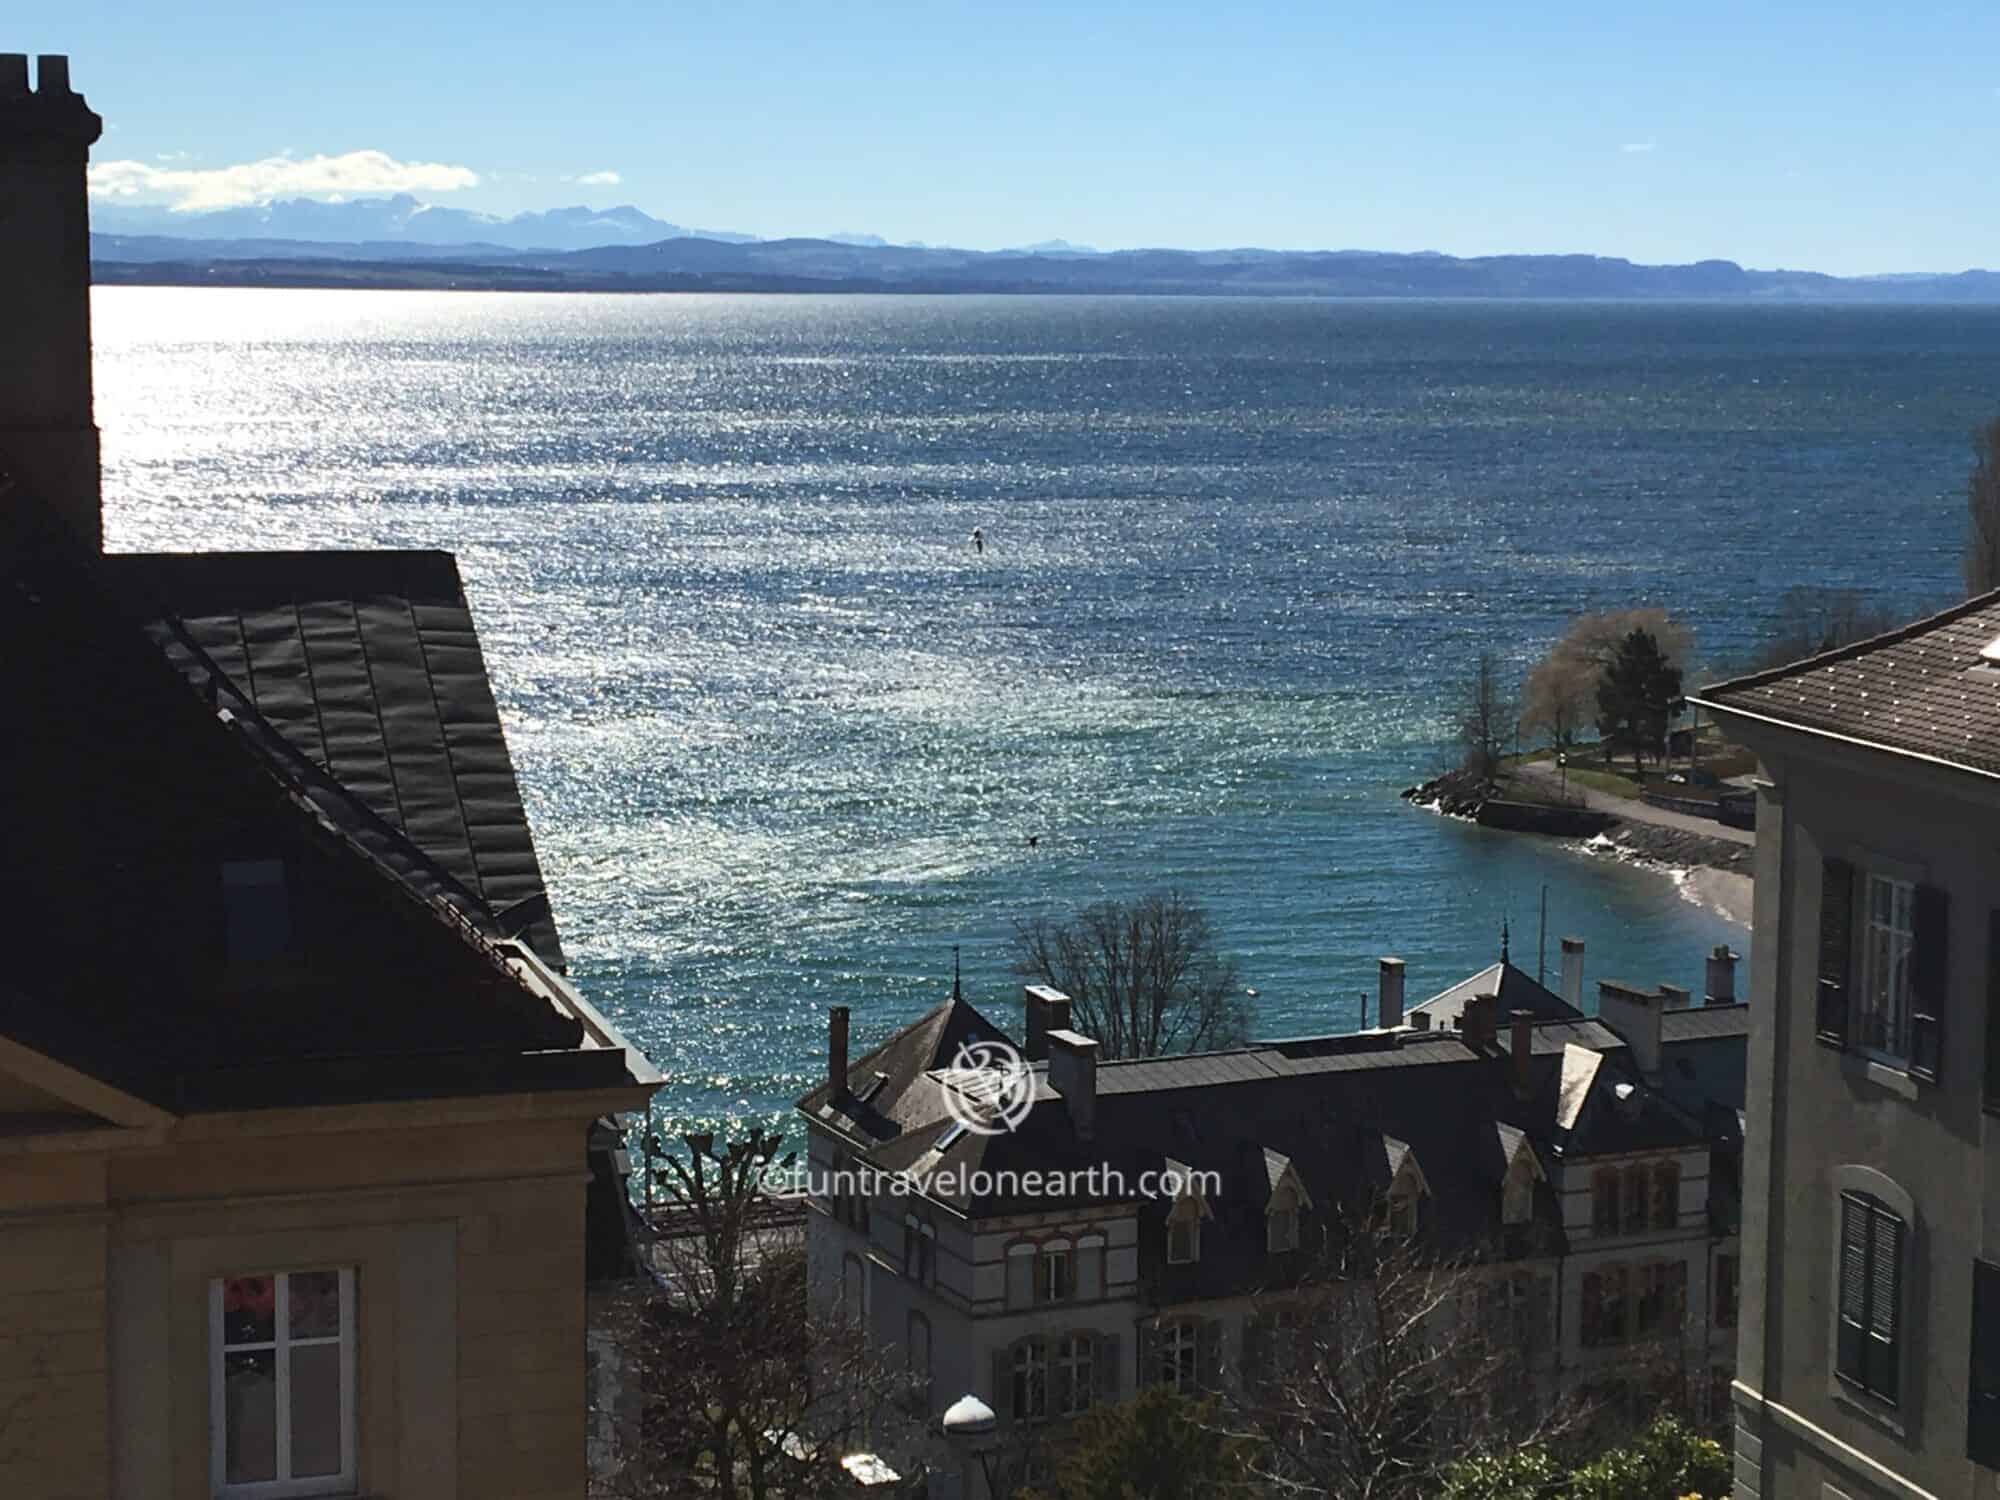 Château de Neuchâtelからの眺め,Neuchâtel